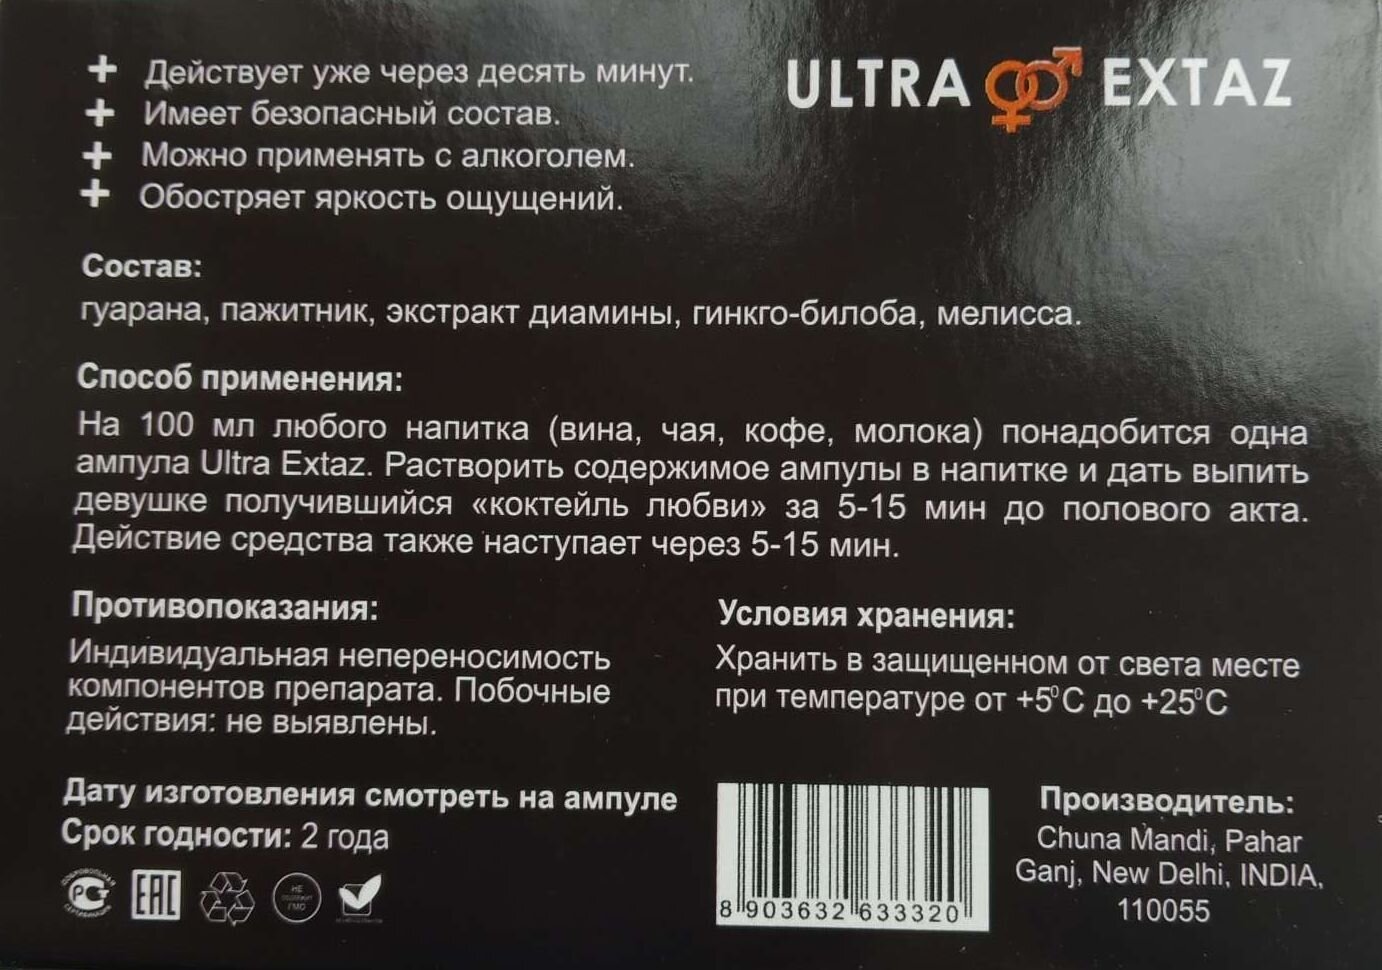 Ultra Extaz - Возбудитель мгновенного действия,Ультра Экстаз Сильный Возбудитель для Женщин